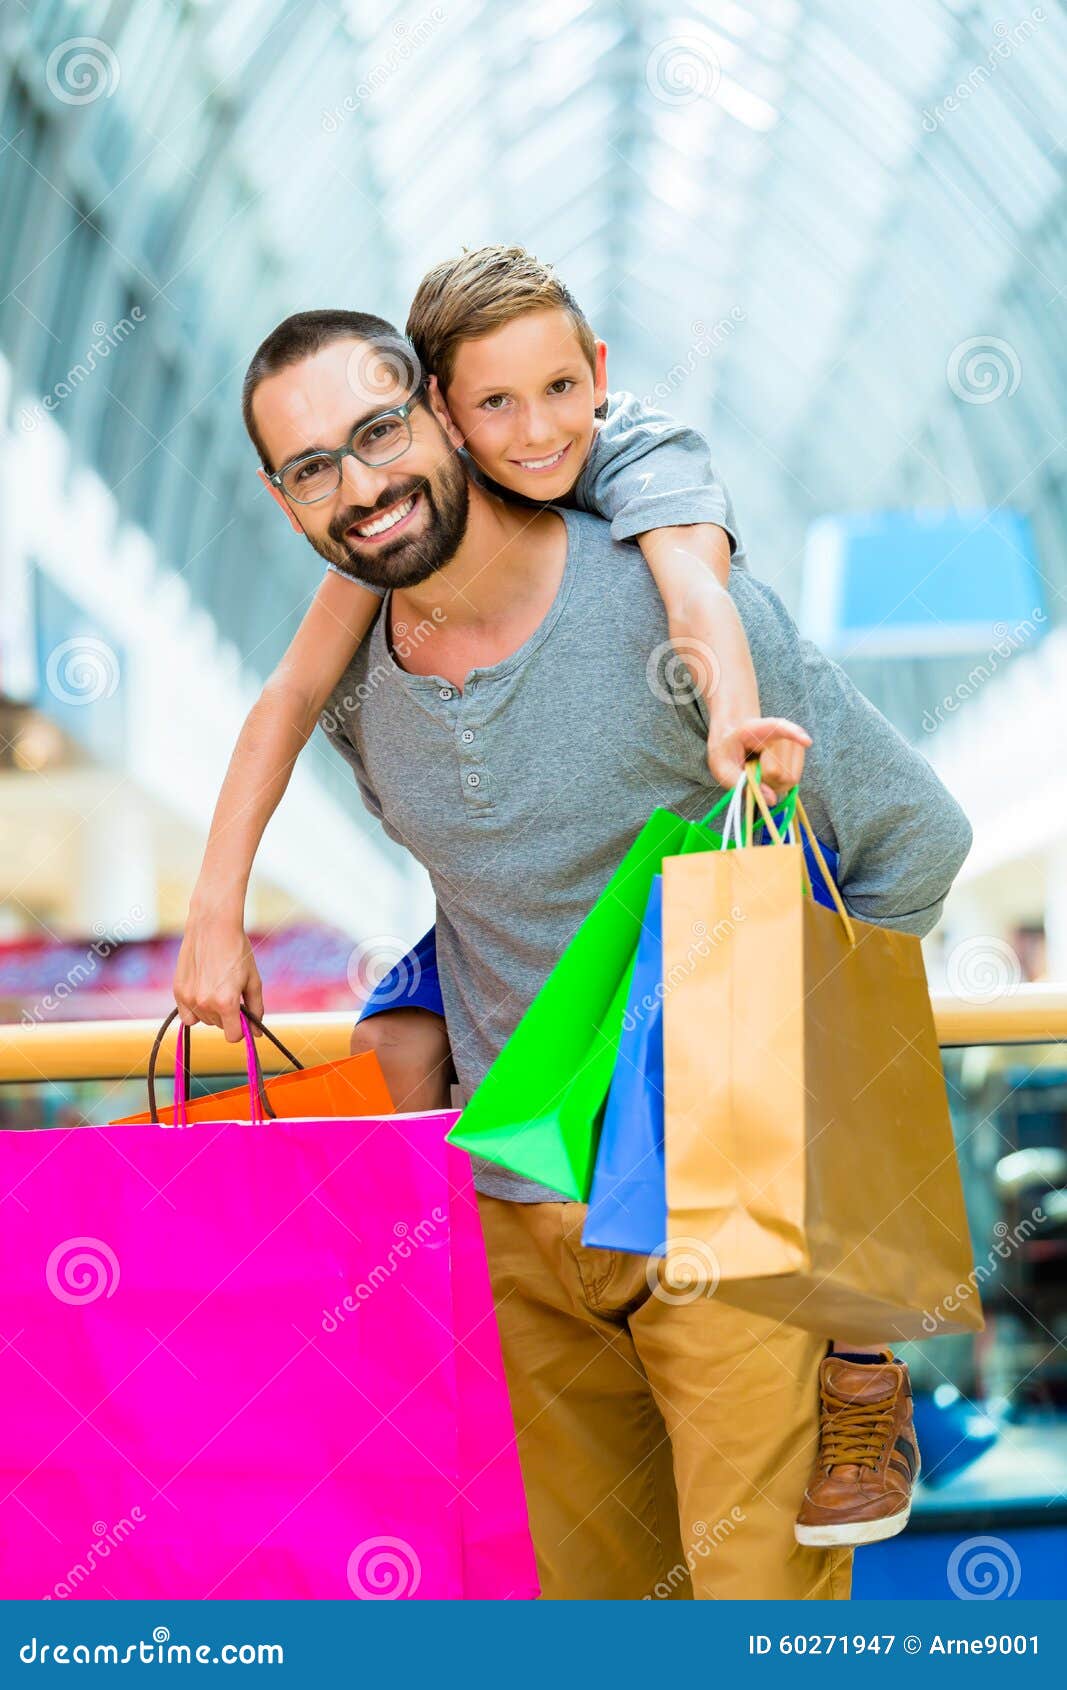 My dad shopping. Семья с покупками. Папа с сыном по магазинам. Сумка папы. Картинка папа с сыном собрались по магазинам.